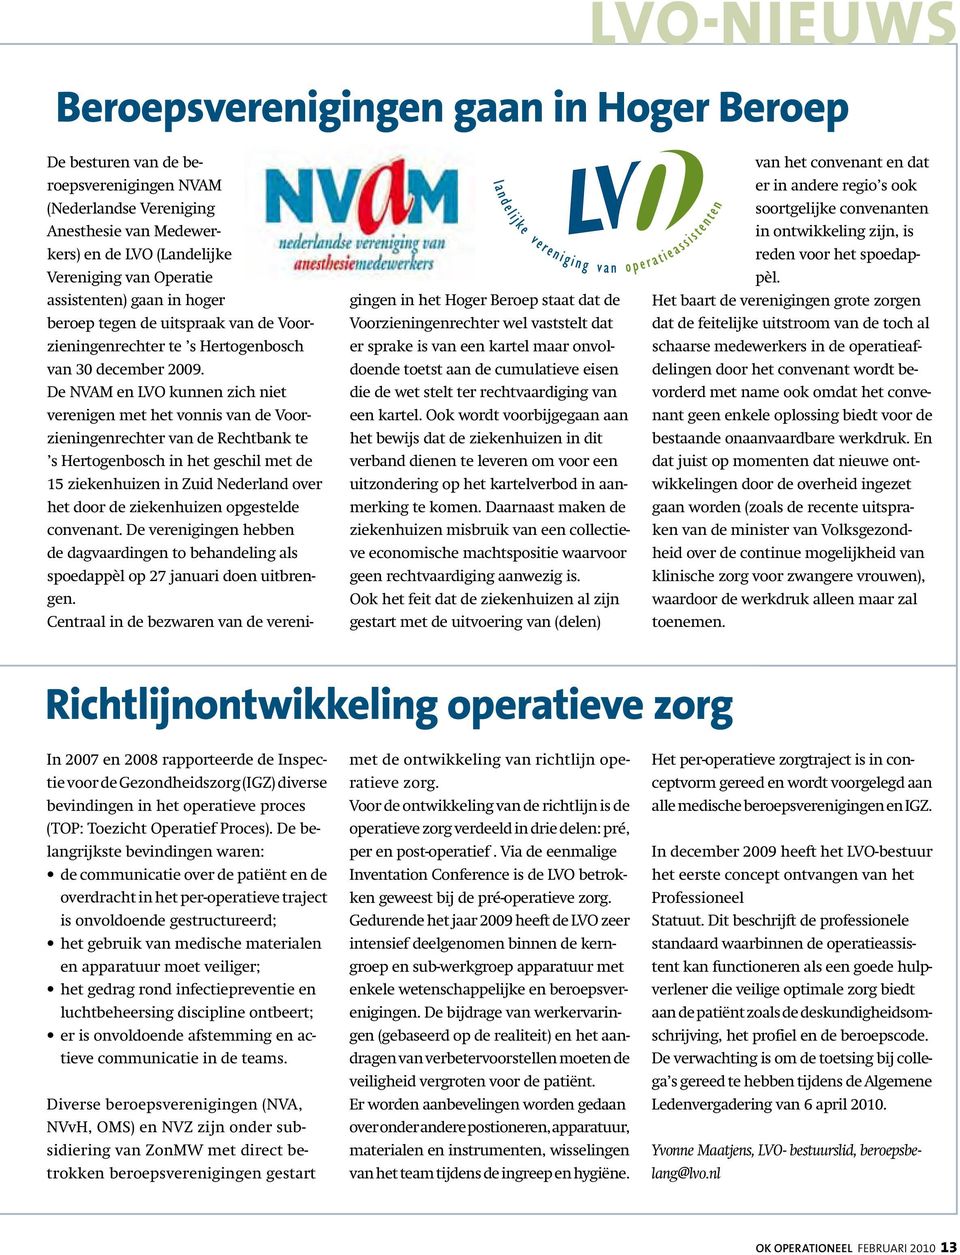 De NVAM en LVO kunnen zich niet verenigen met het vonnis van de Voorzieningenrechter van de Rechtbank te s Hertogenbosch in het geschil met de 15 ziekenhuizen in Zuid Nederland over het door de